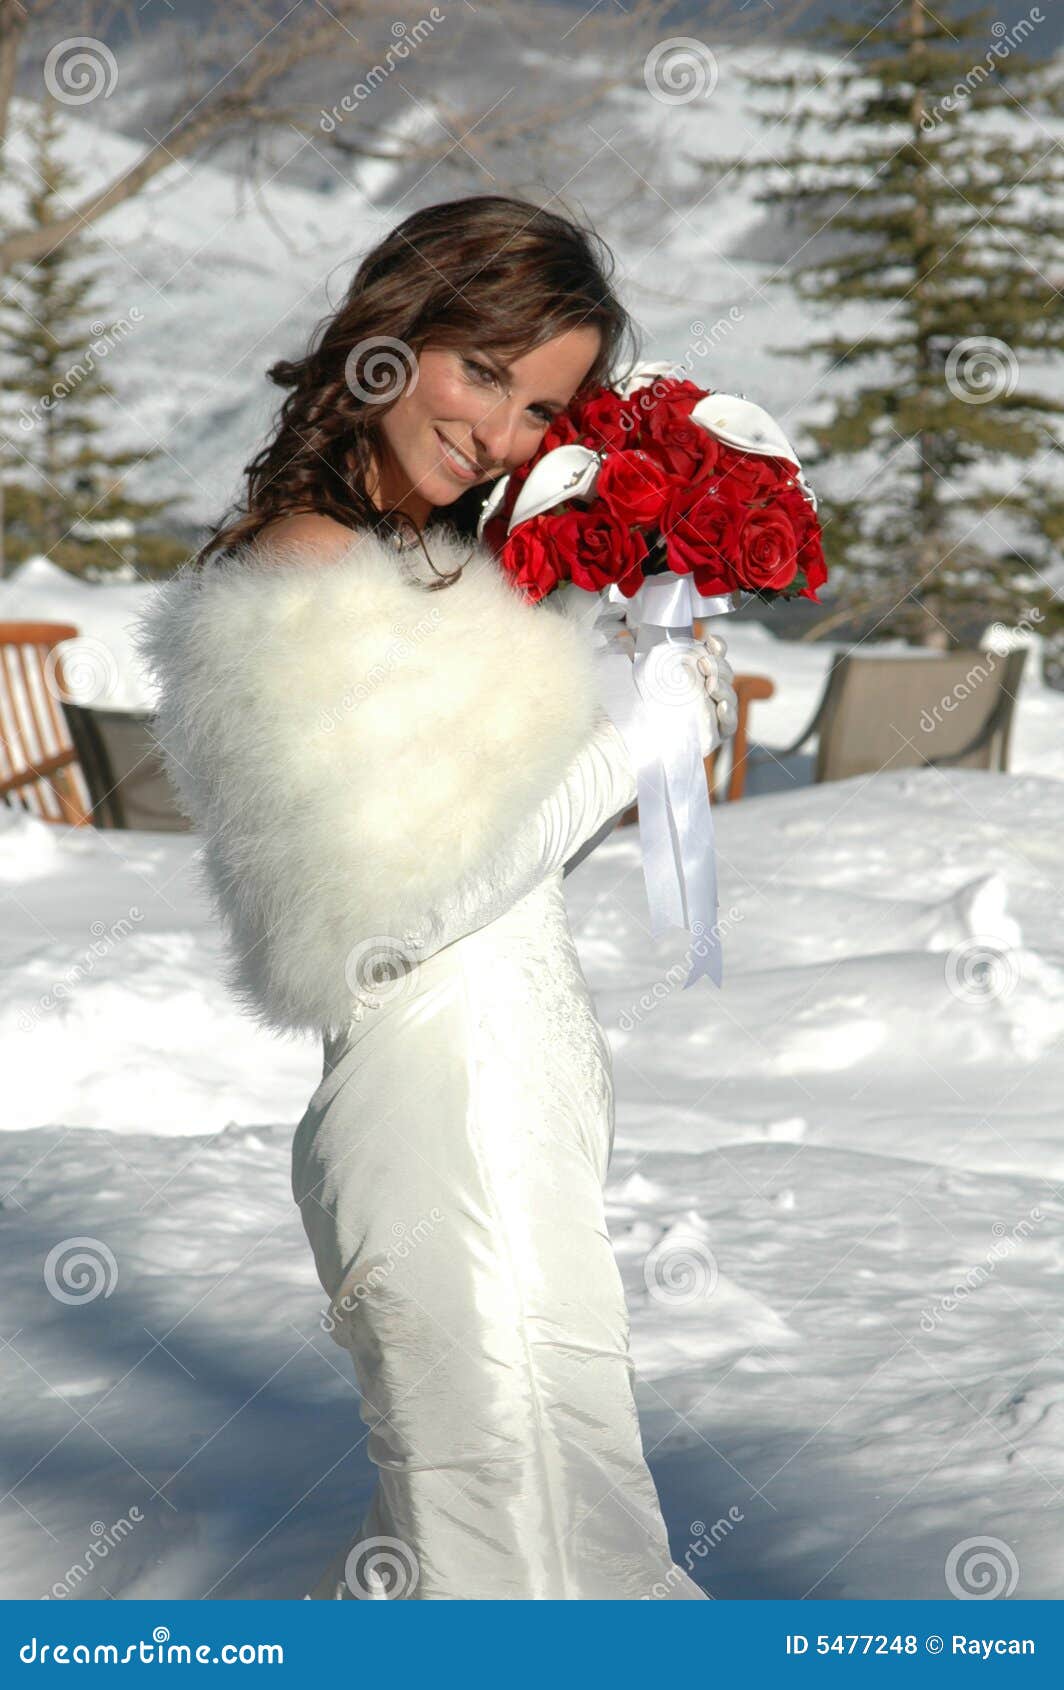 βουνό νυφών. όμορφο βουνό εκμετάλλευσης εσθήτων γουνών νυφών μπροστινό έξω από το κόκκινο χιόνι τριαντάφυλλων που στέκεται την τακτοποιημένη γαμήλια λευκή γυναίκα